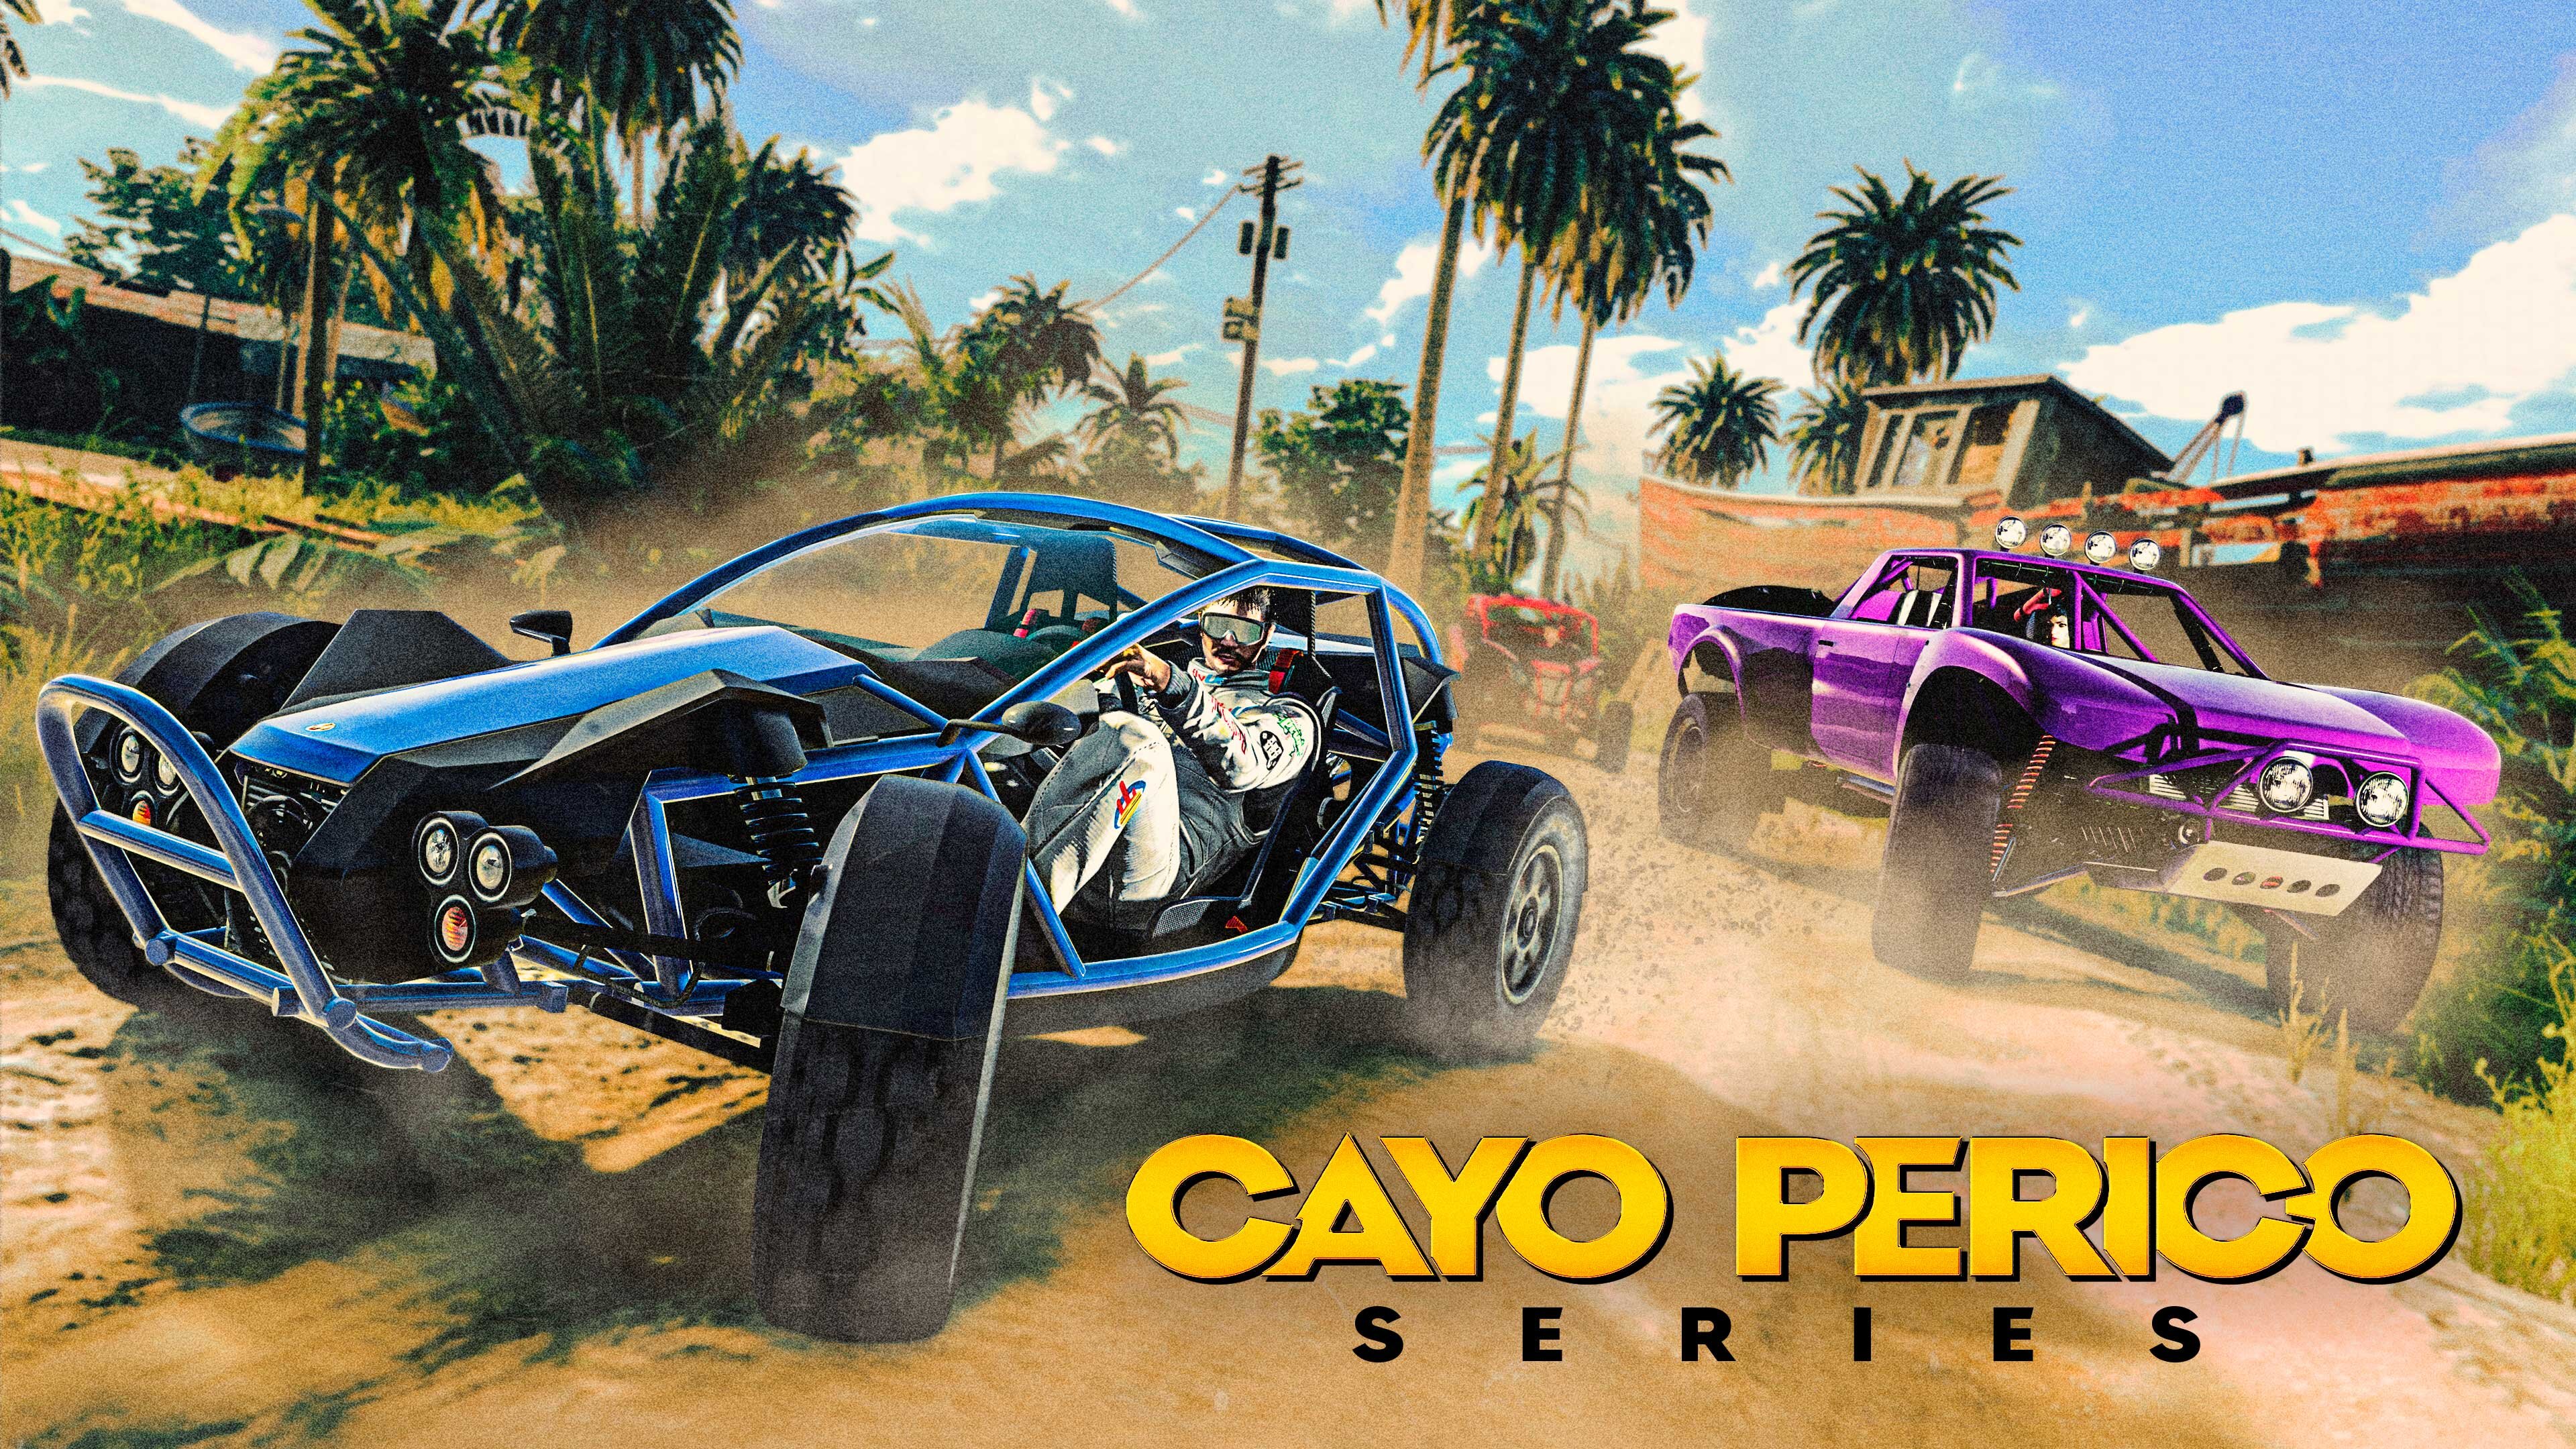 More information about "Race op Cayo Perico in een nieuwe Series en voertuig"